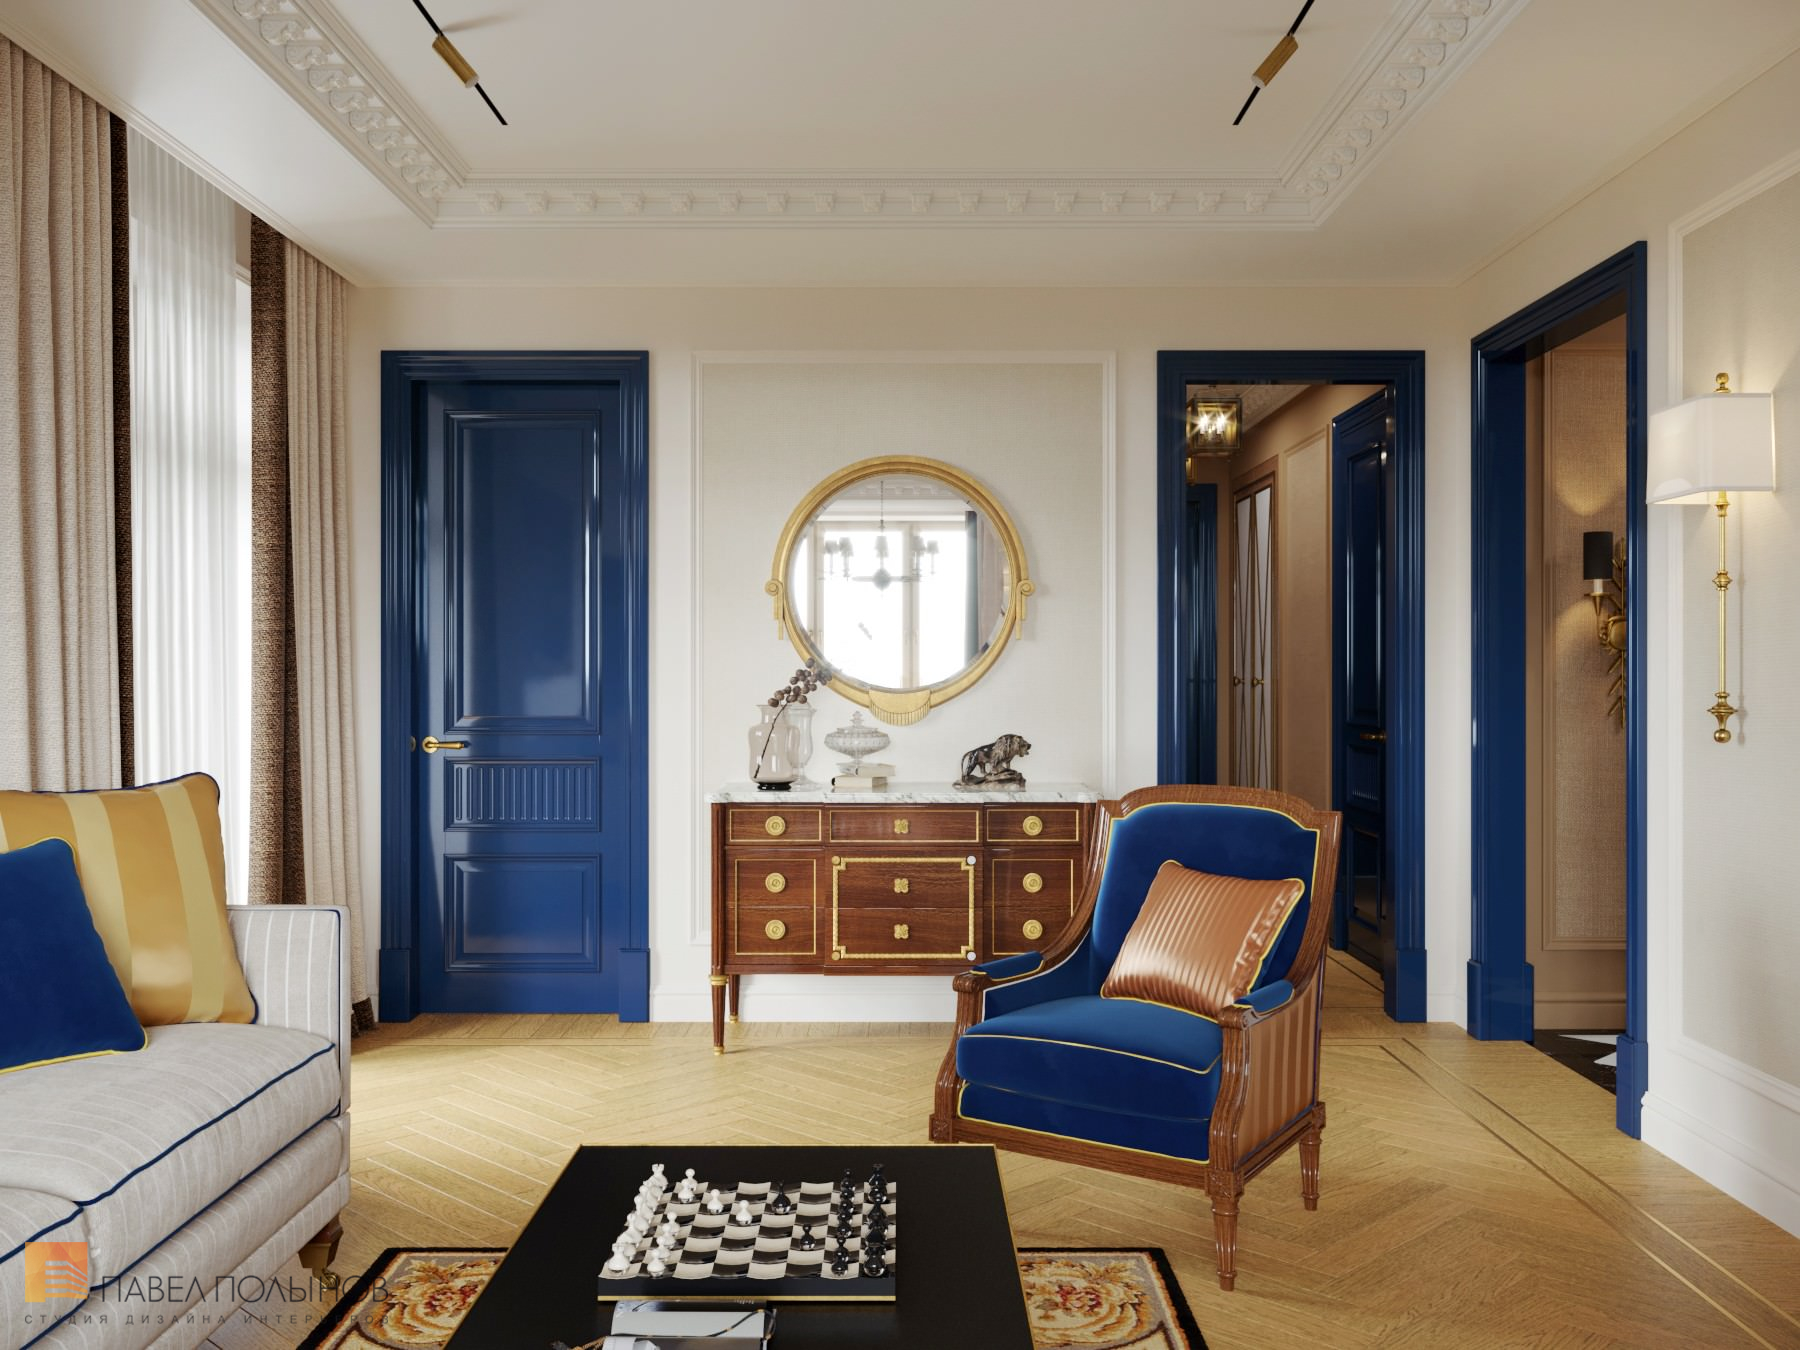 Фото дизайн гостиной - столовой из проекта «Интерьер квартиры в стиле английской классики, ЖК «Патриот», 124 кв.м.»